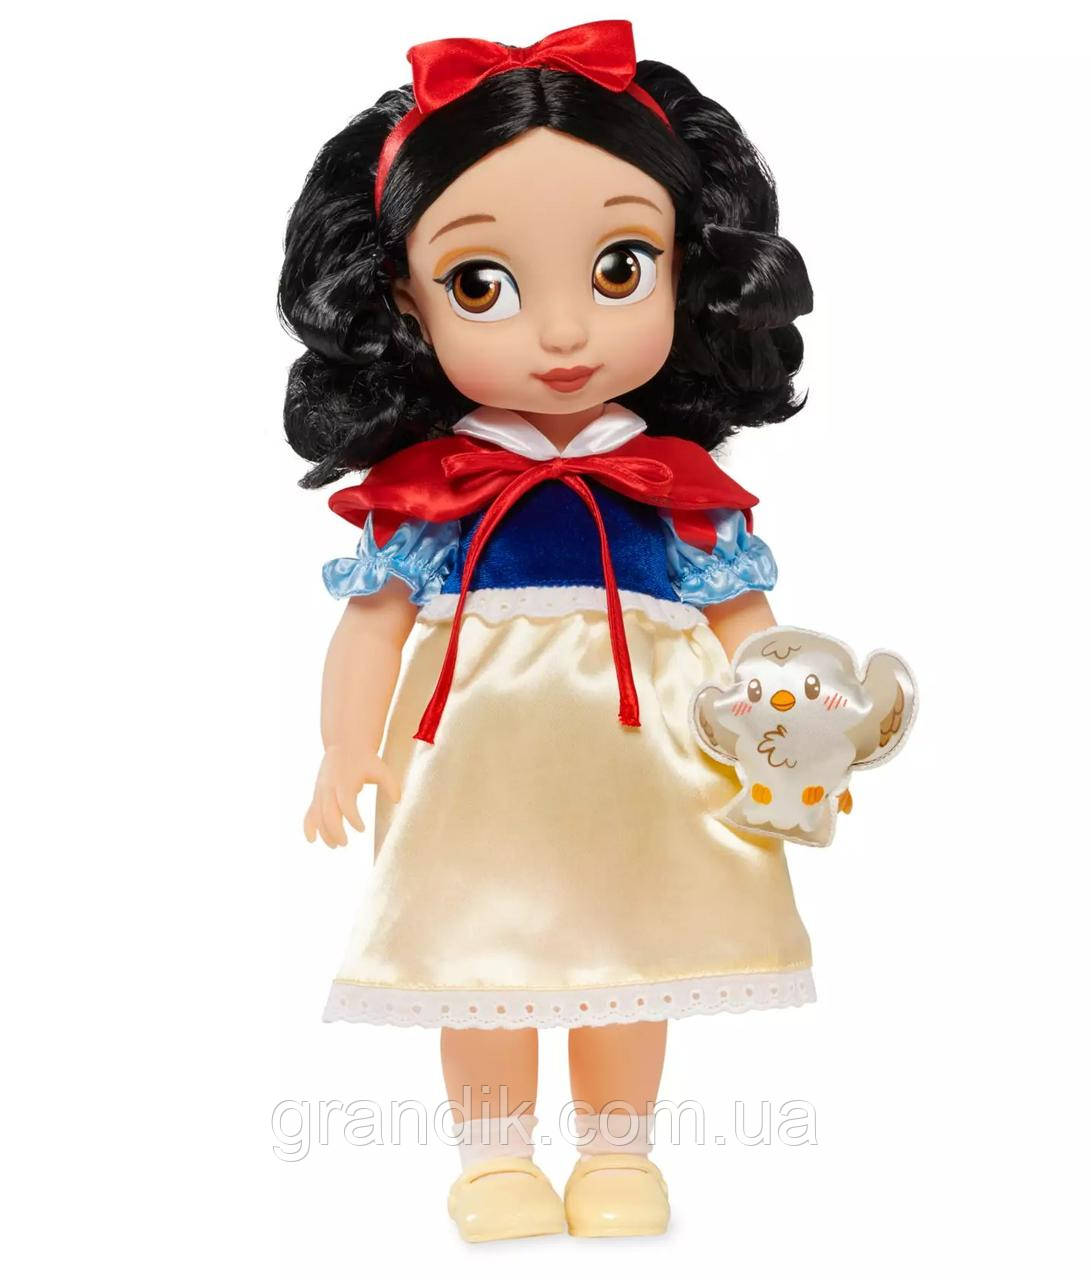 Лялька Білосніжка Аніматор Дісней, оригінал, Disney Animators' Collection Snow White Doll